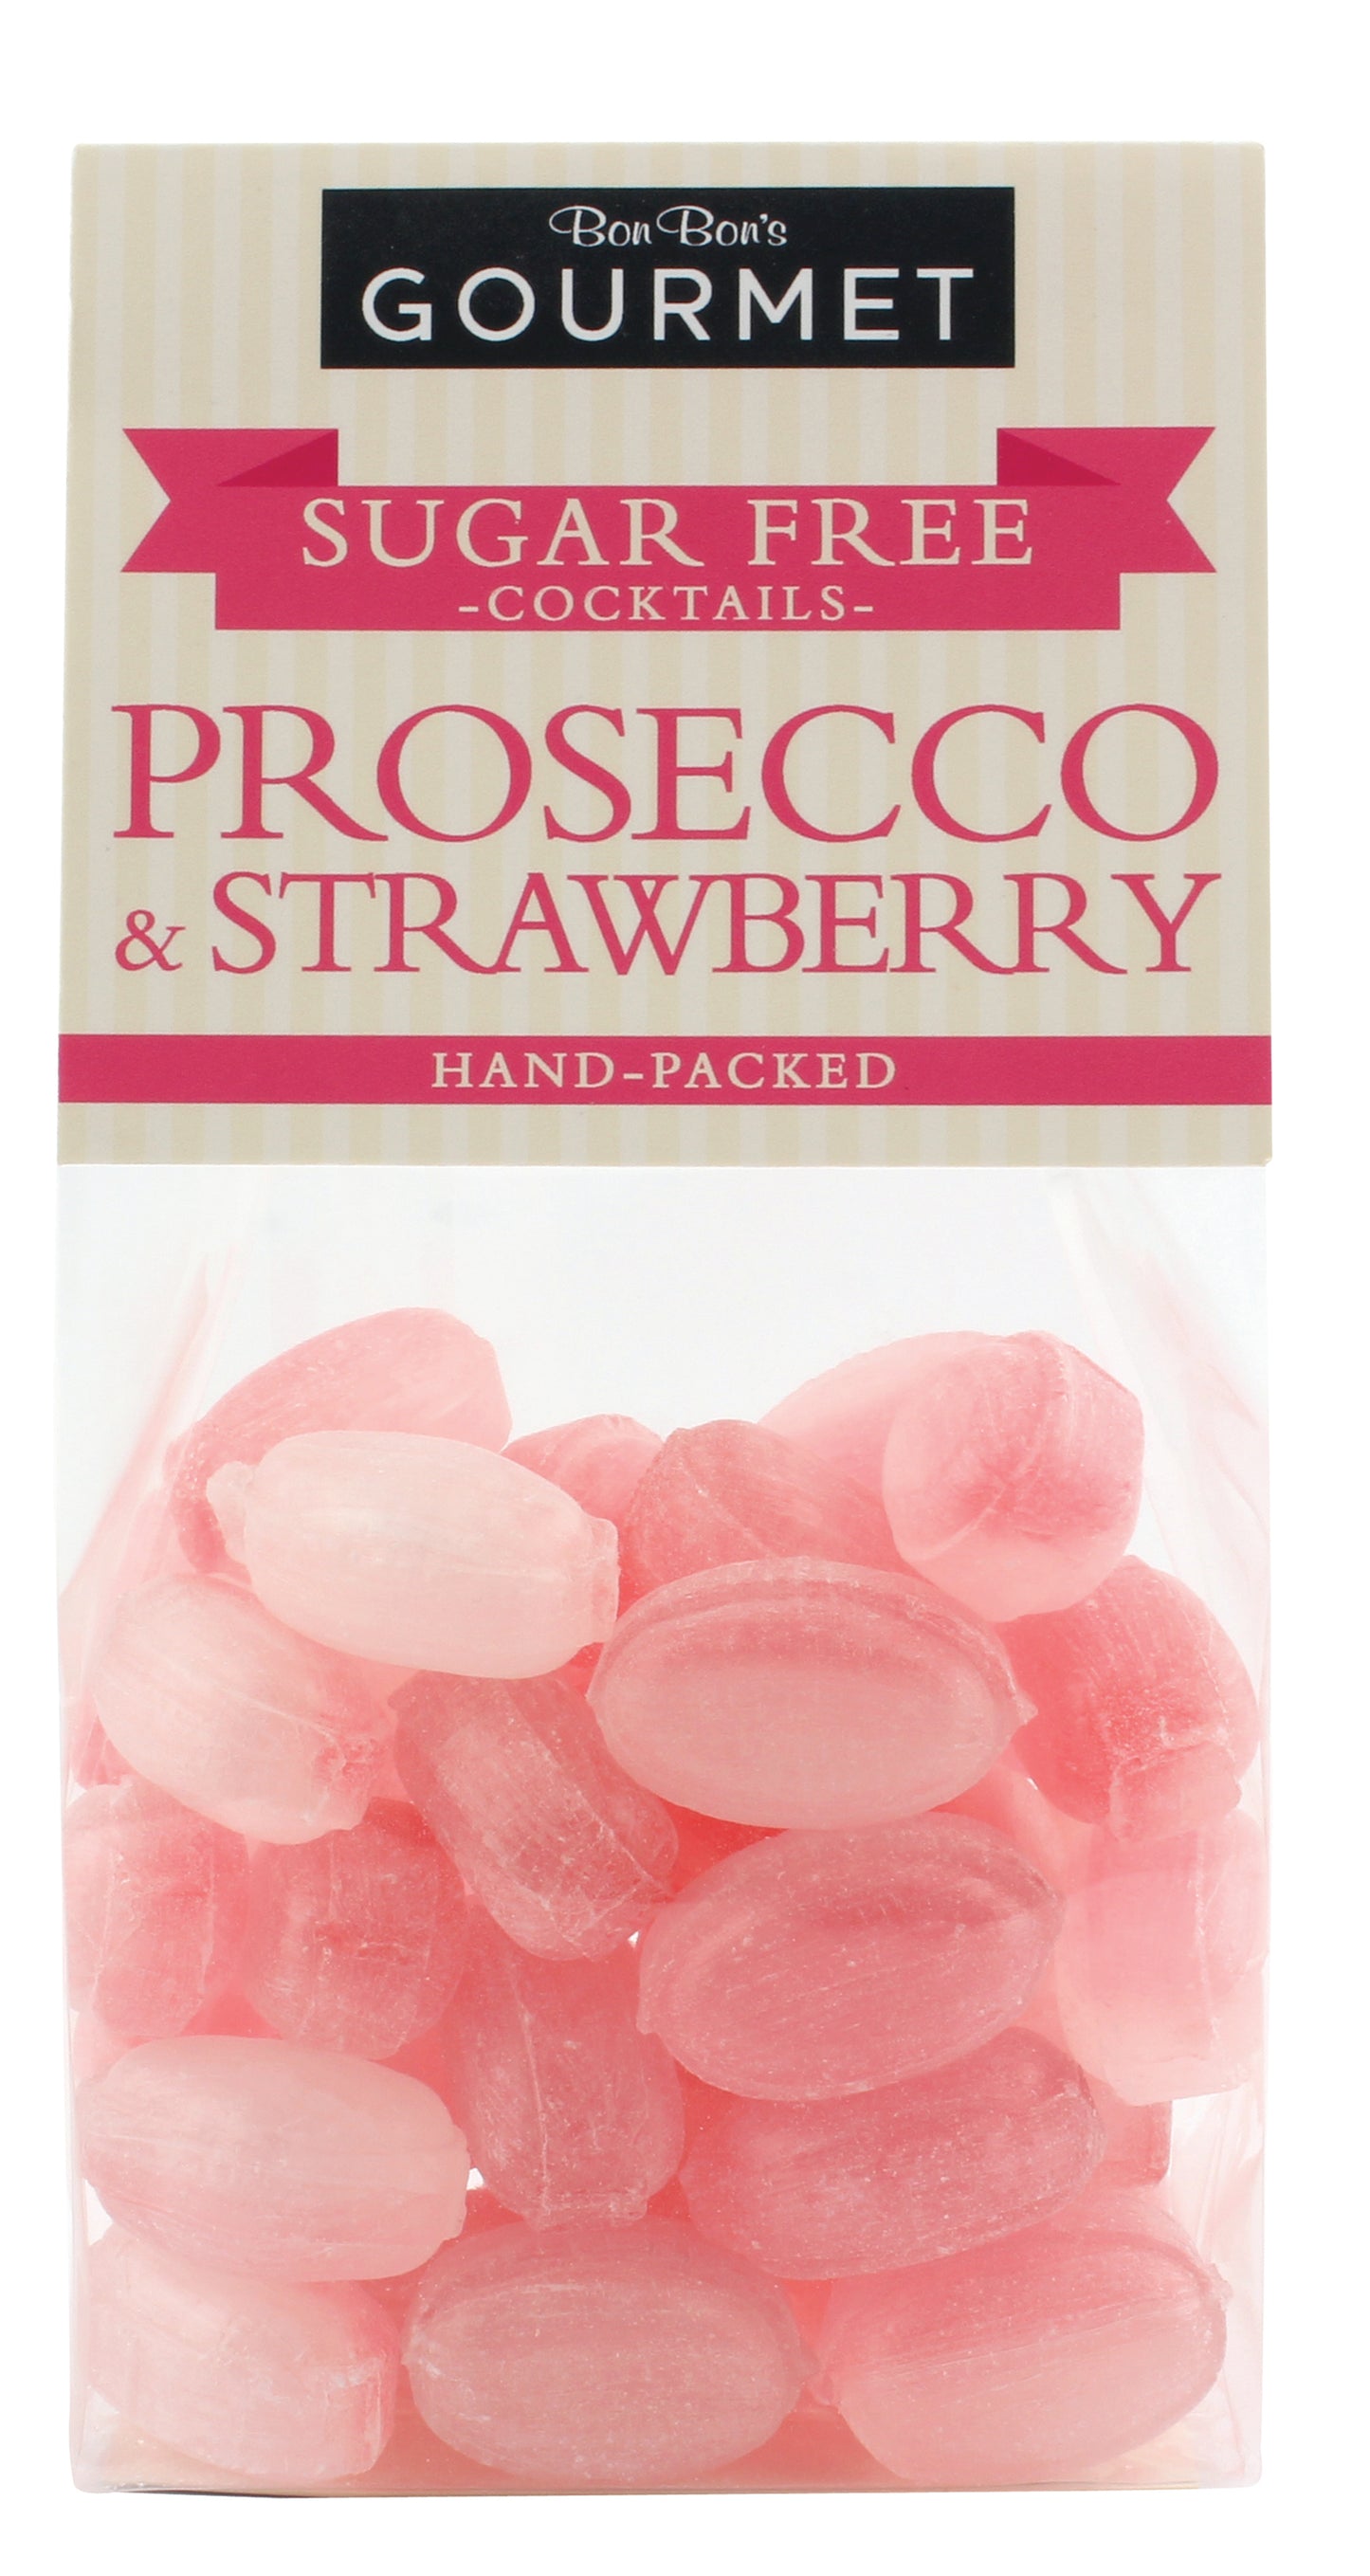 Prosecco & Strawberry 160g